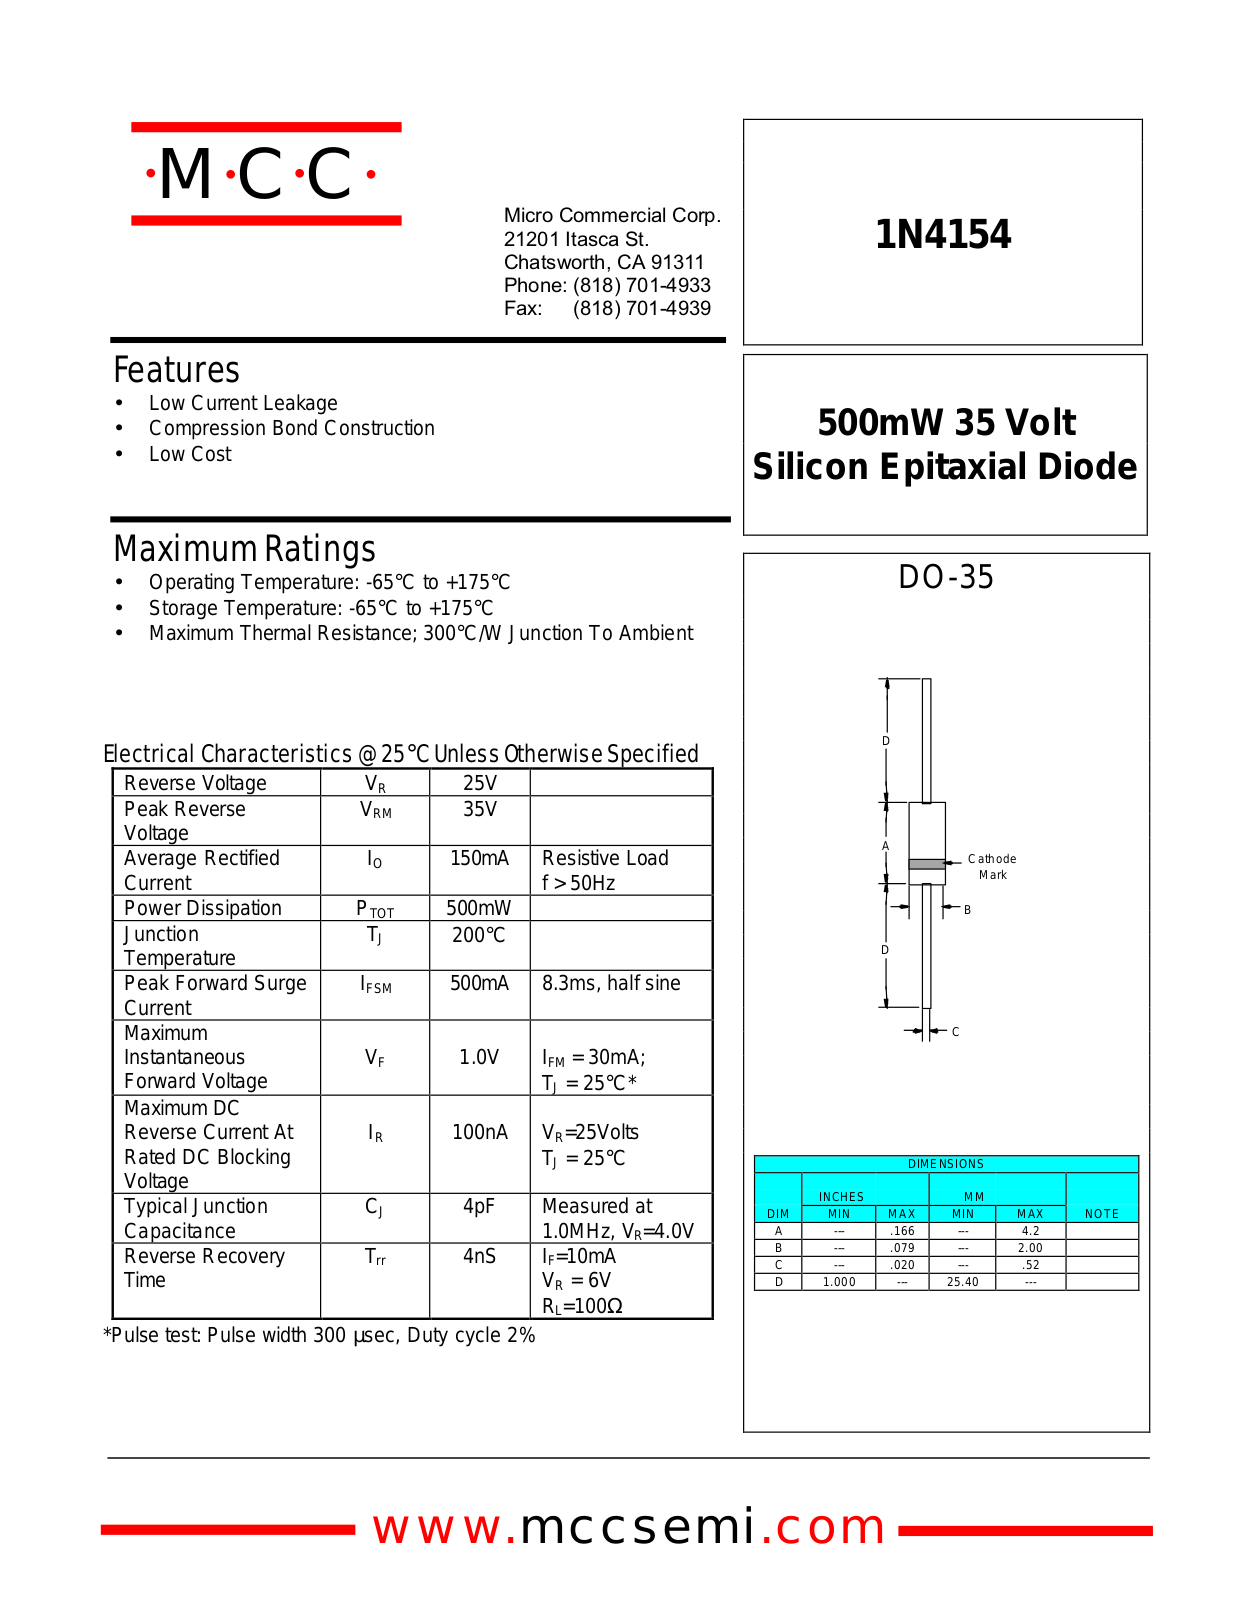 MCC 1N4154 Datasheet